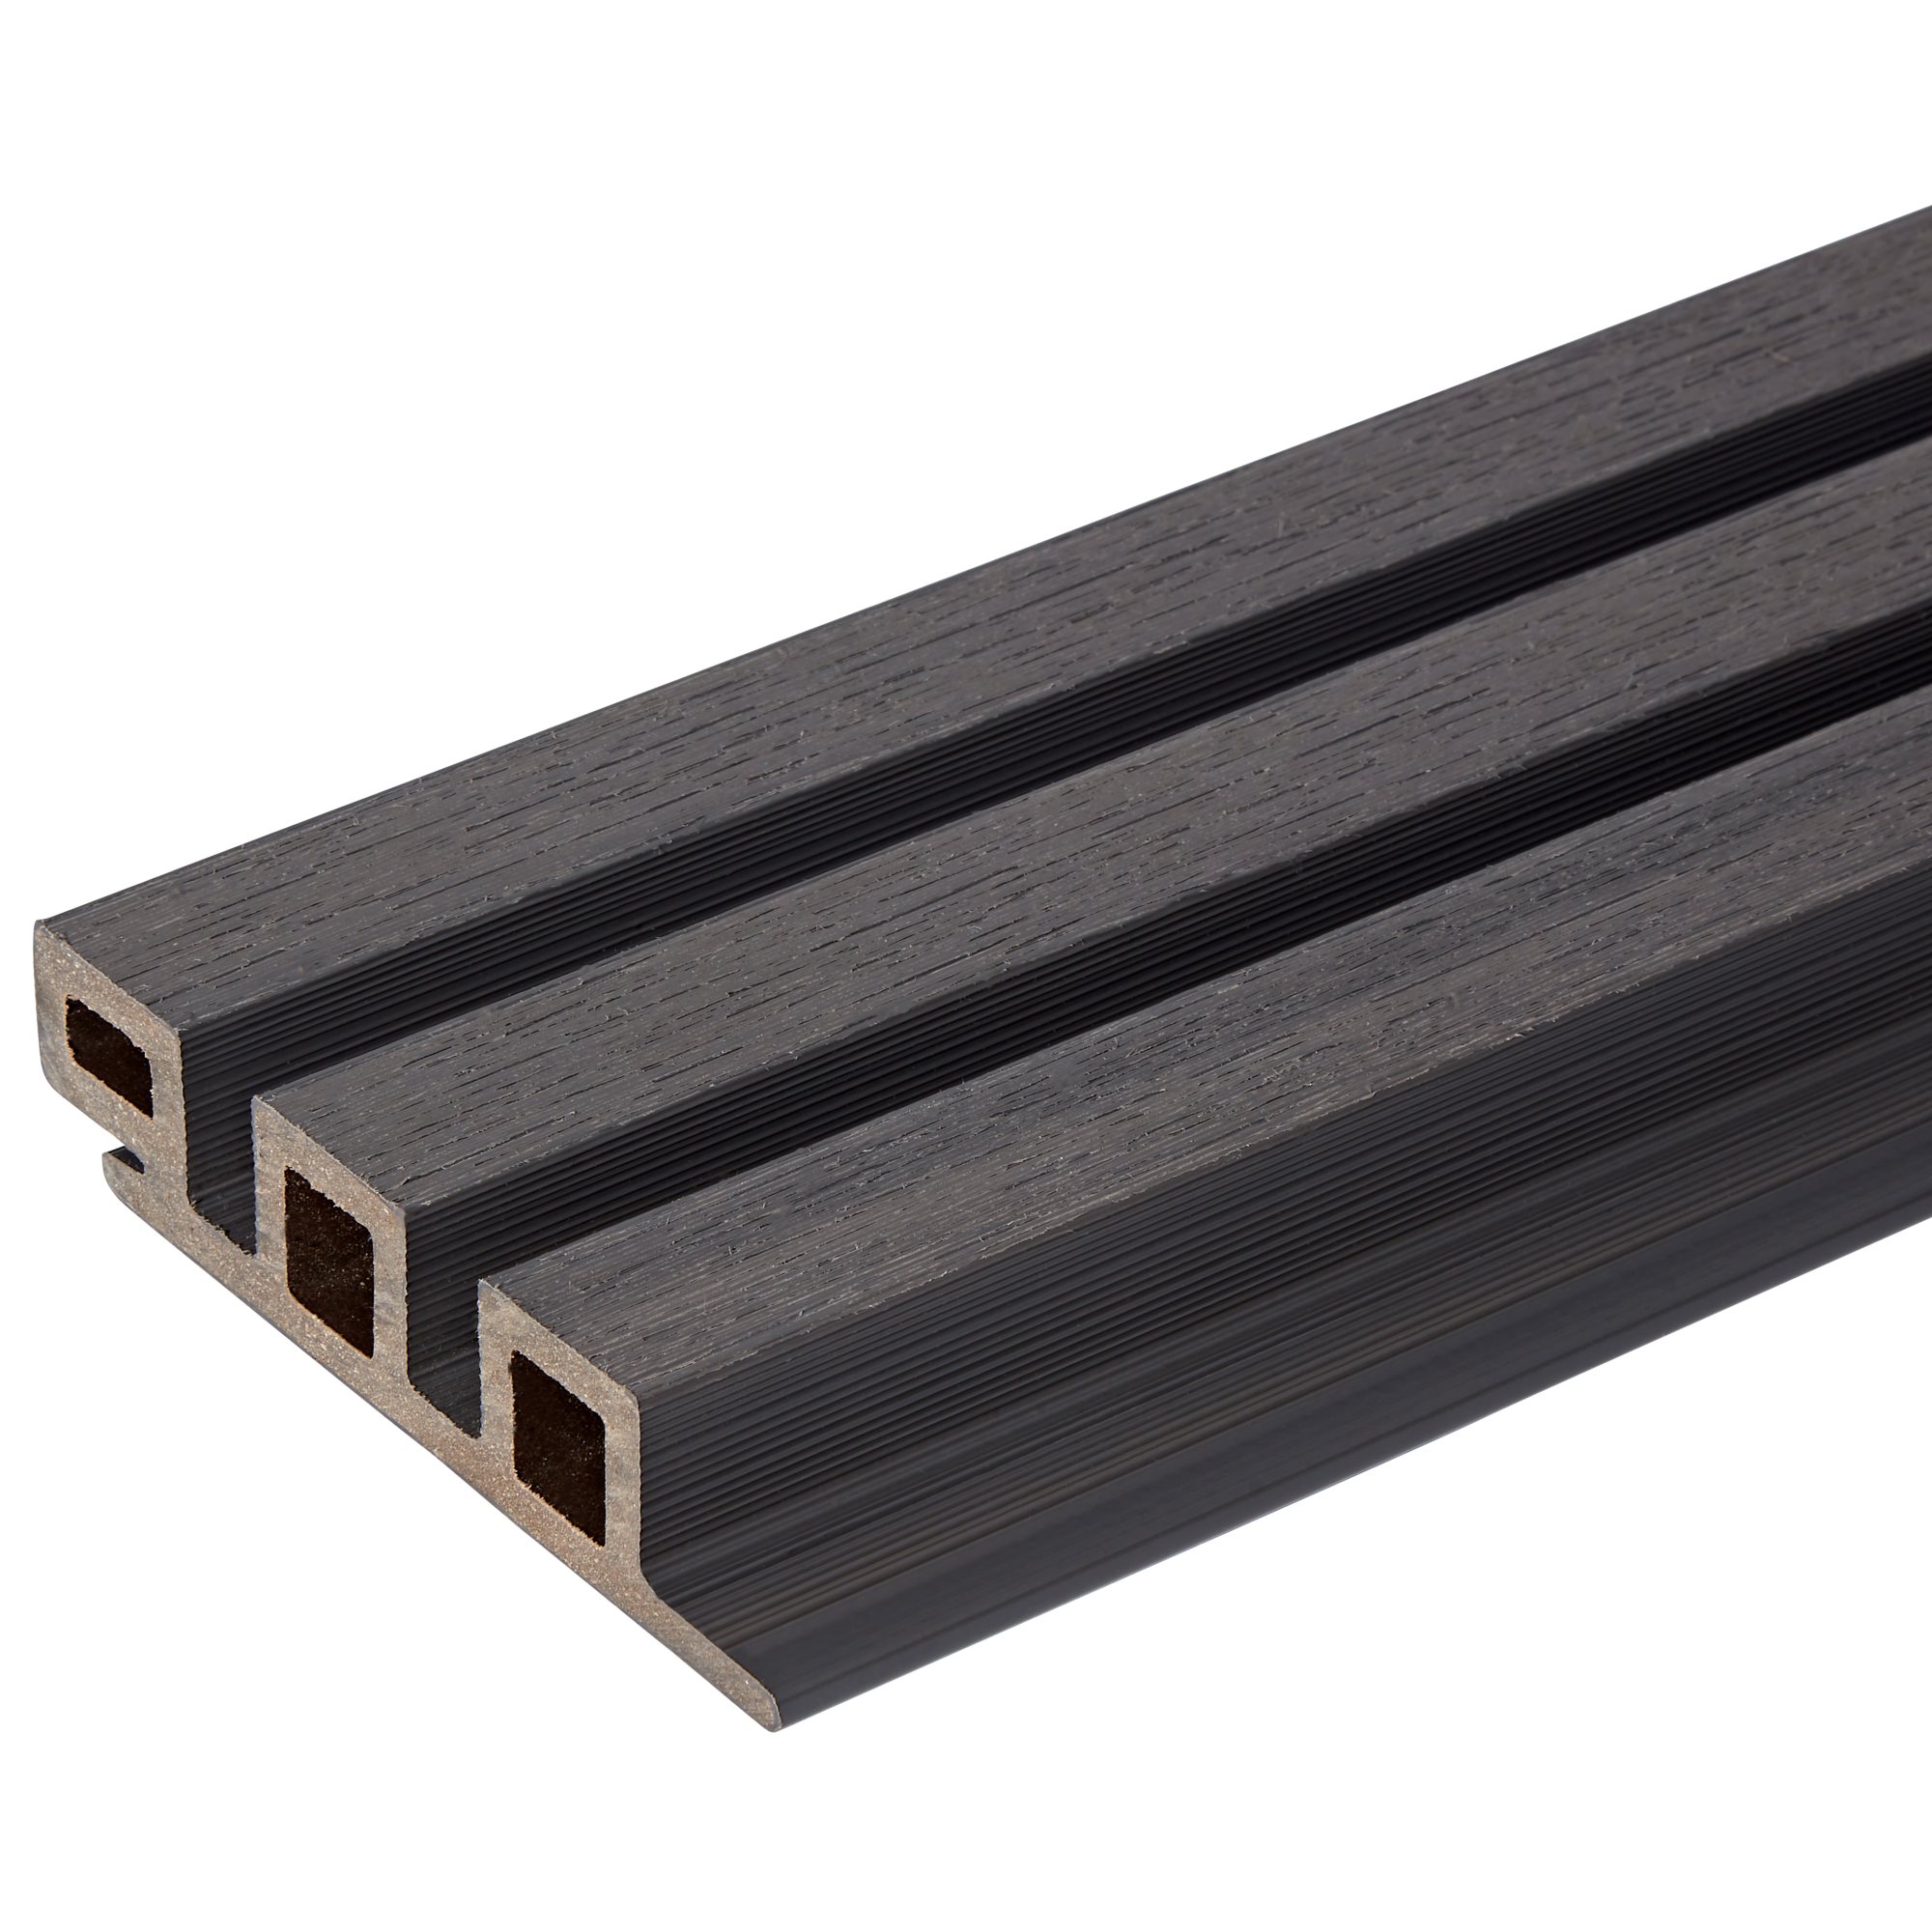 Argent Composite Slatted Cladding Board | BM Steel